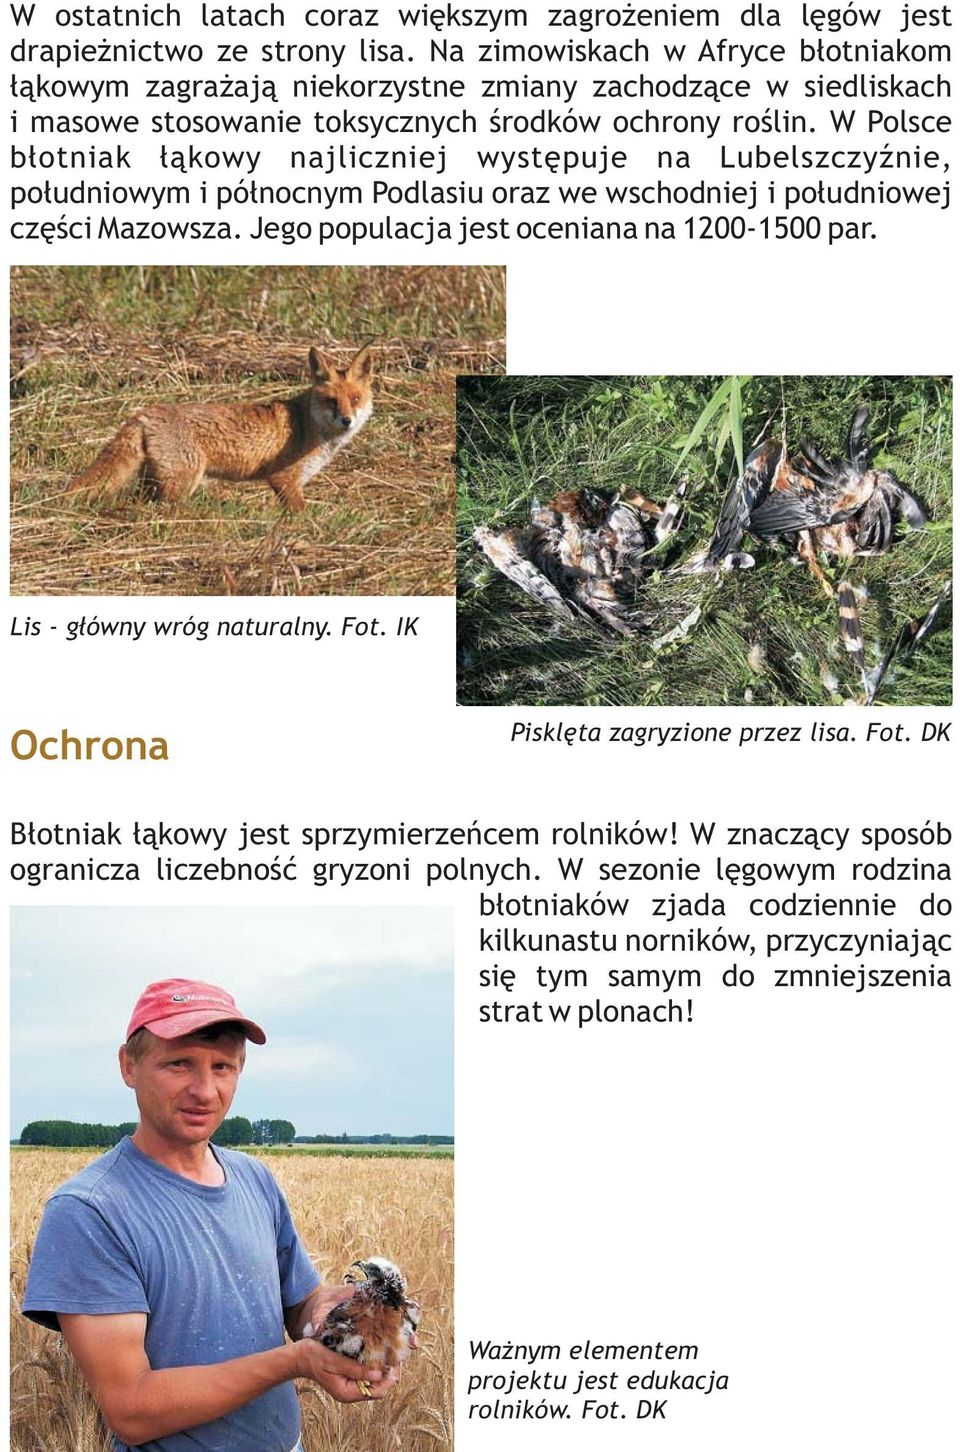 W Polsce błotniak łąkowy najliczniej występuje na Lubelszczyźnie, południowym i północnym Podlasiu oraz we wschodniej i południowej części Mazowsza. Jego populacja jest oceniana na 1200-1500 par.